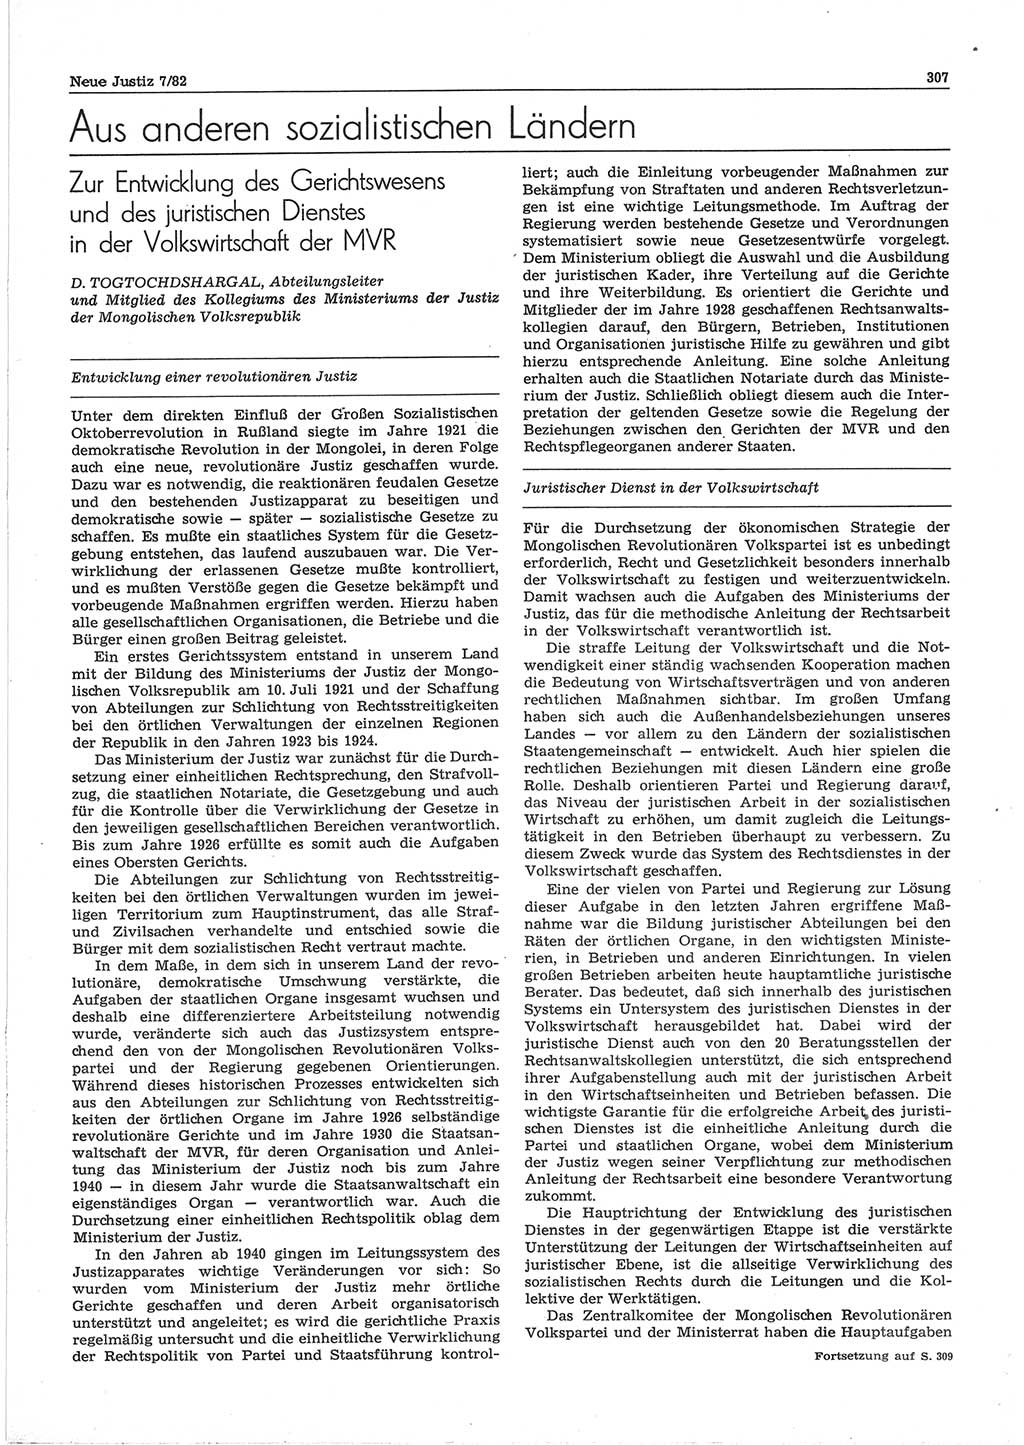 Neue Justiz (NJ), Zeitschrift für sozialistisches Recht und Gesetzlichkeit [Deutsche Demokratische Republik (DDR)], 36. Jahrgang 1982, Seite 307 (NJ DDR 1982, S. 307)